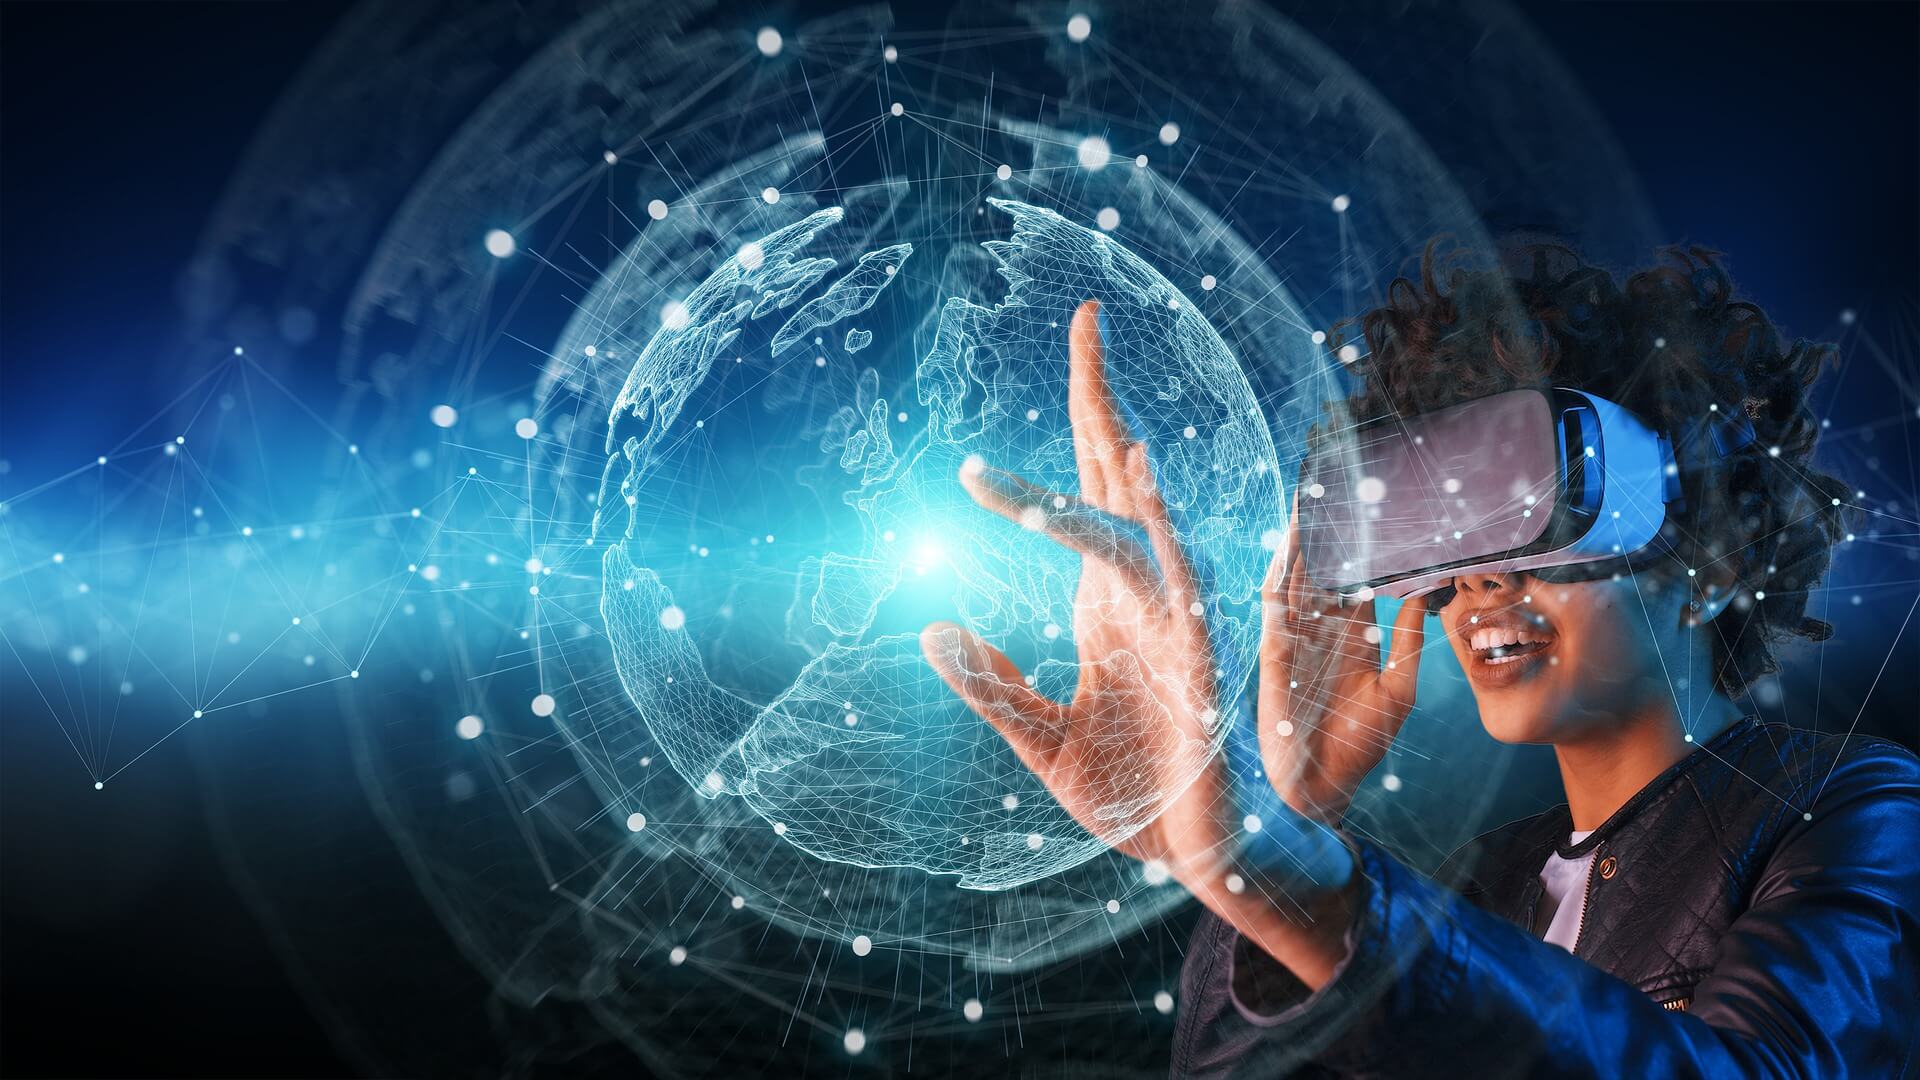 图片展示一位戴着虚拟现实眼镜的人，正用手触摸光线构成的地球仪，体现了现代科技与虚拟互动的融合。